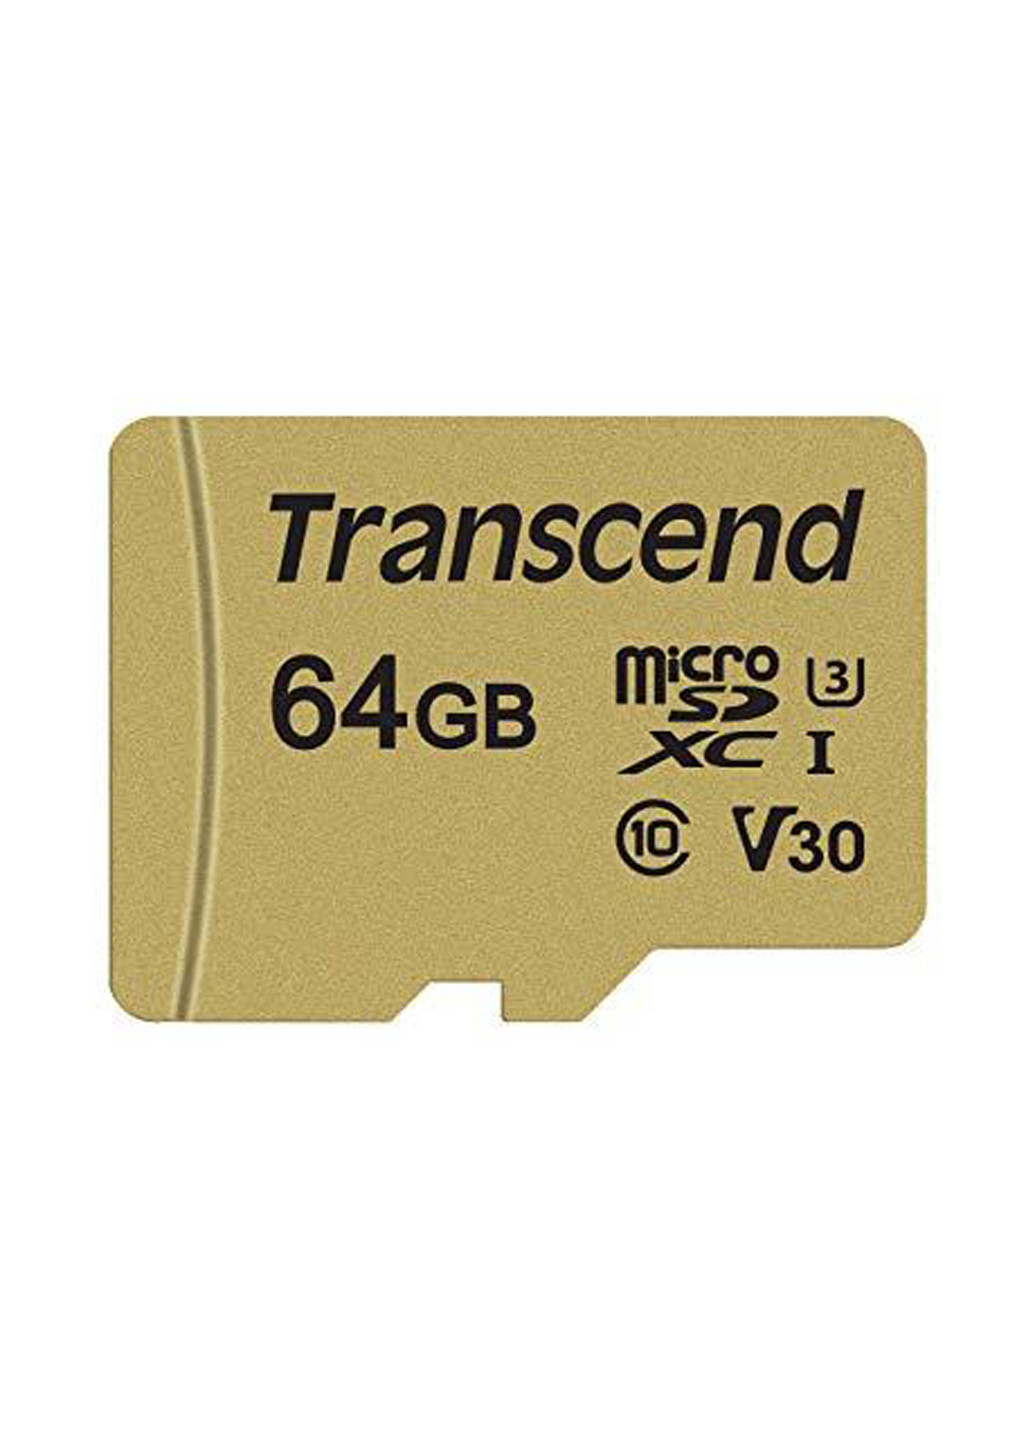 Карта памяти microSDXC 64GB C10 UHS-I U3 (R95/W60MB/s) + SD-adapter (TS64GUSD500S) Transcend карта памяти transcend microsdxc 64gb c10 uhs-i u3 (r95/w60mb/s) + sd-adapter (ts64gusd500s) (130843149)